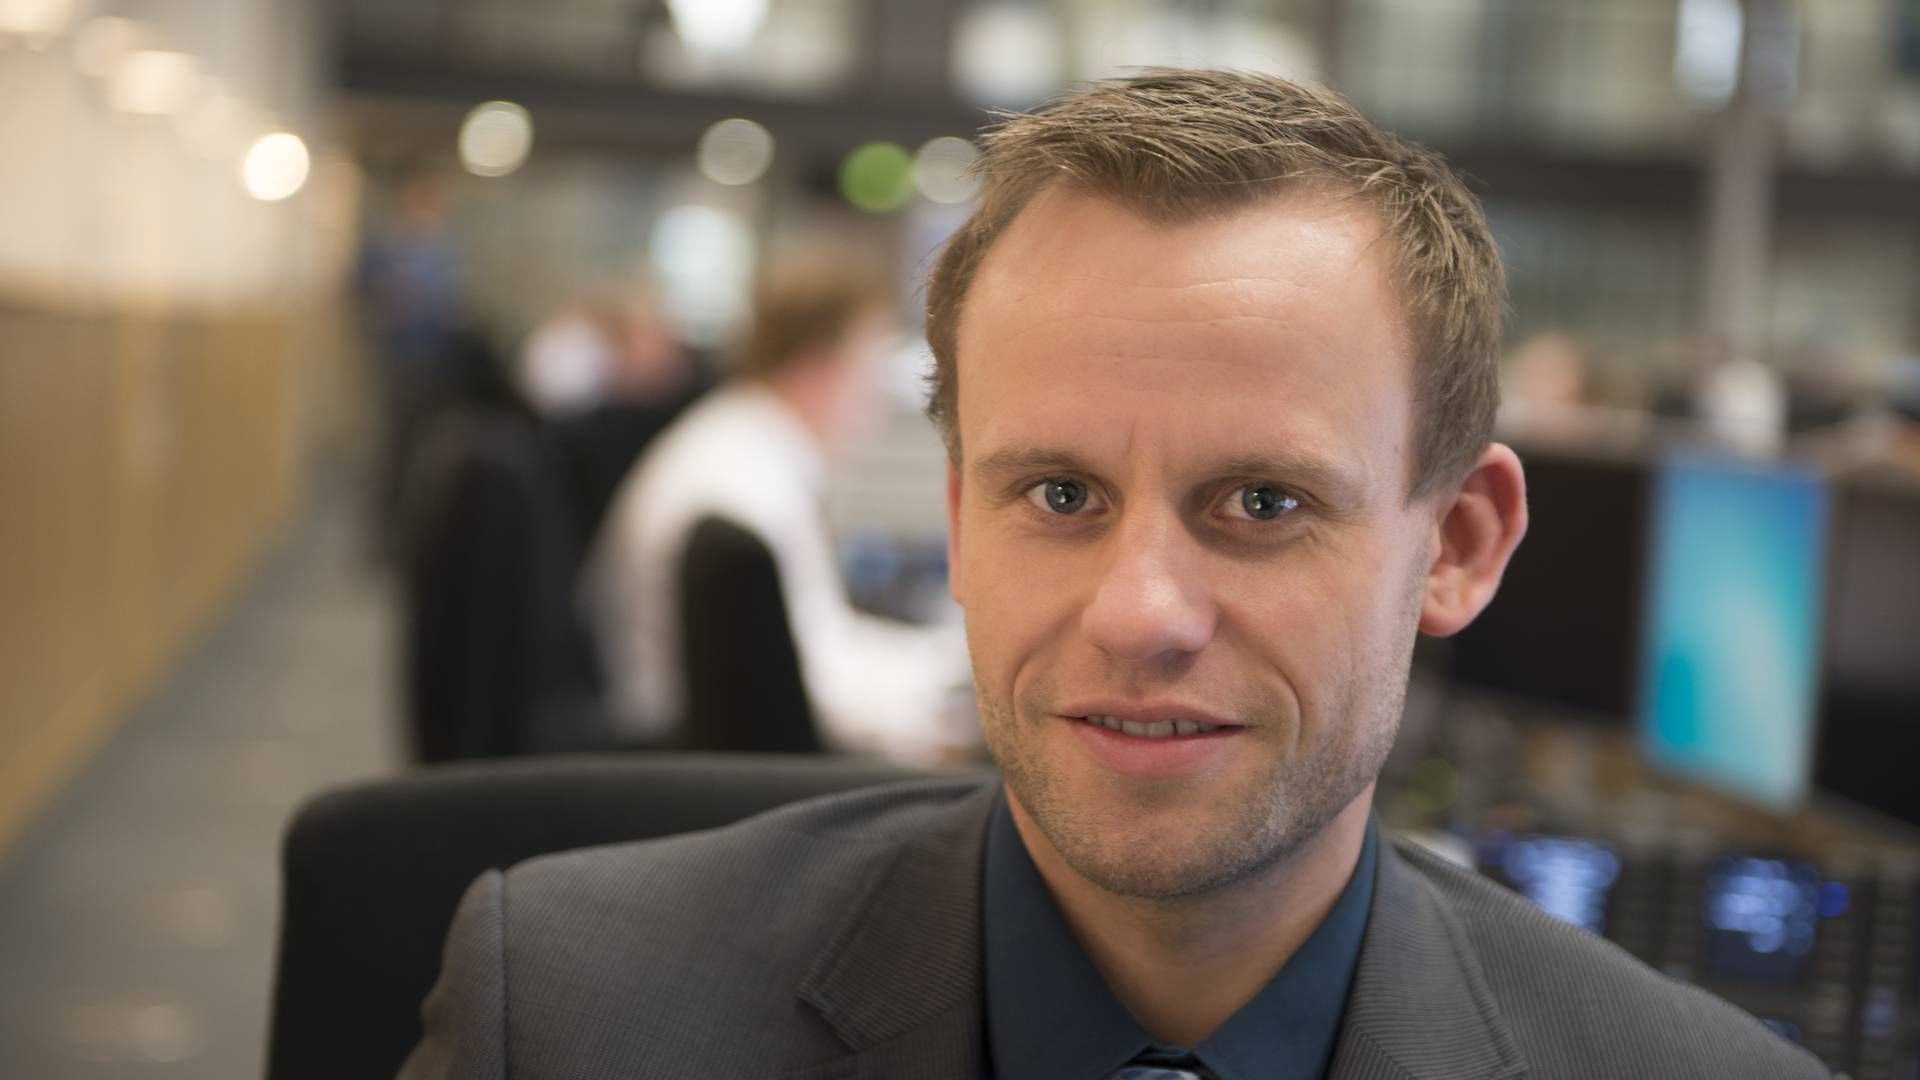 Søren Løntoft Hansen, senior equity analyst at Sydbank | Photo: sydbank / pr